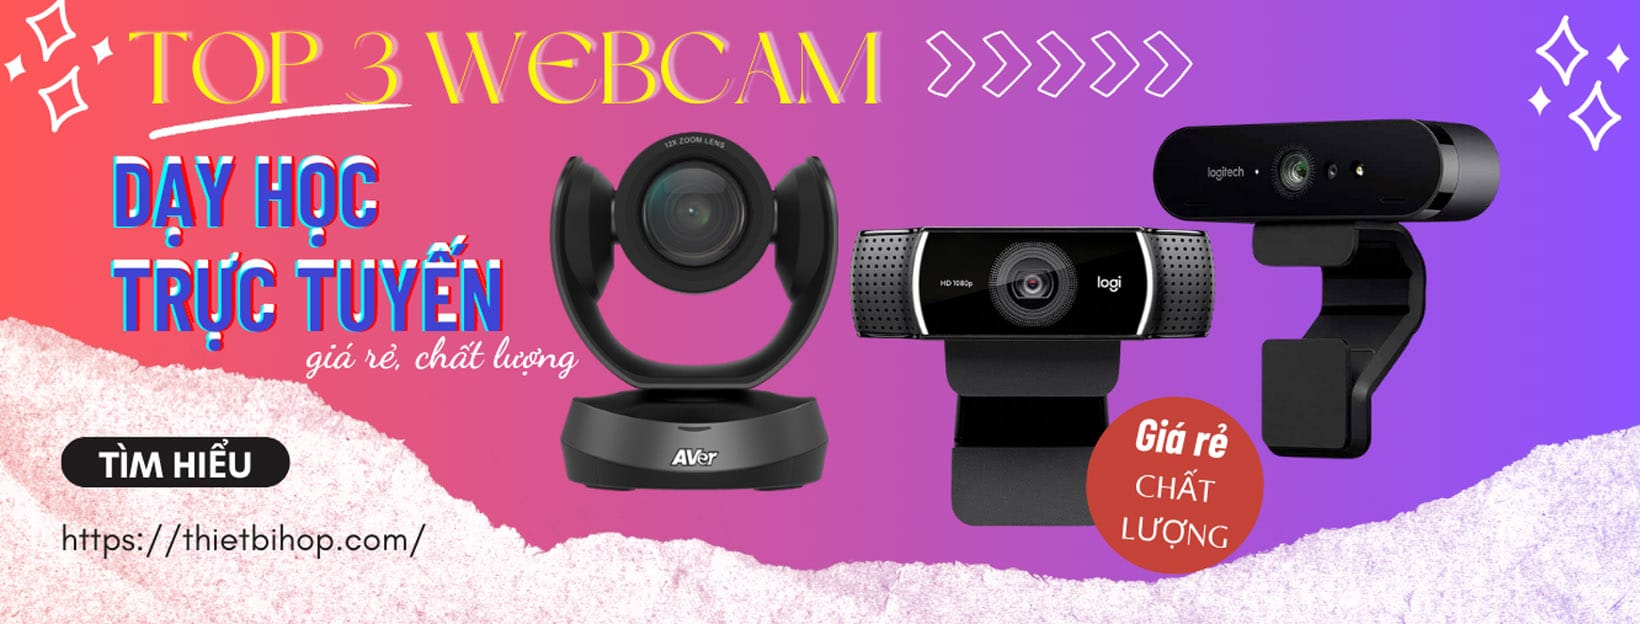 top 3 webcam dạy học trực tuyến